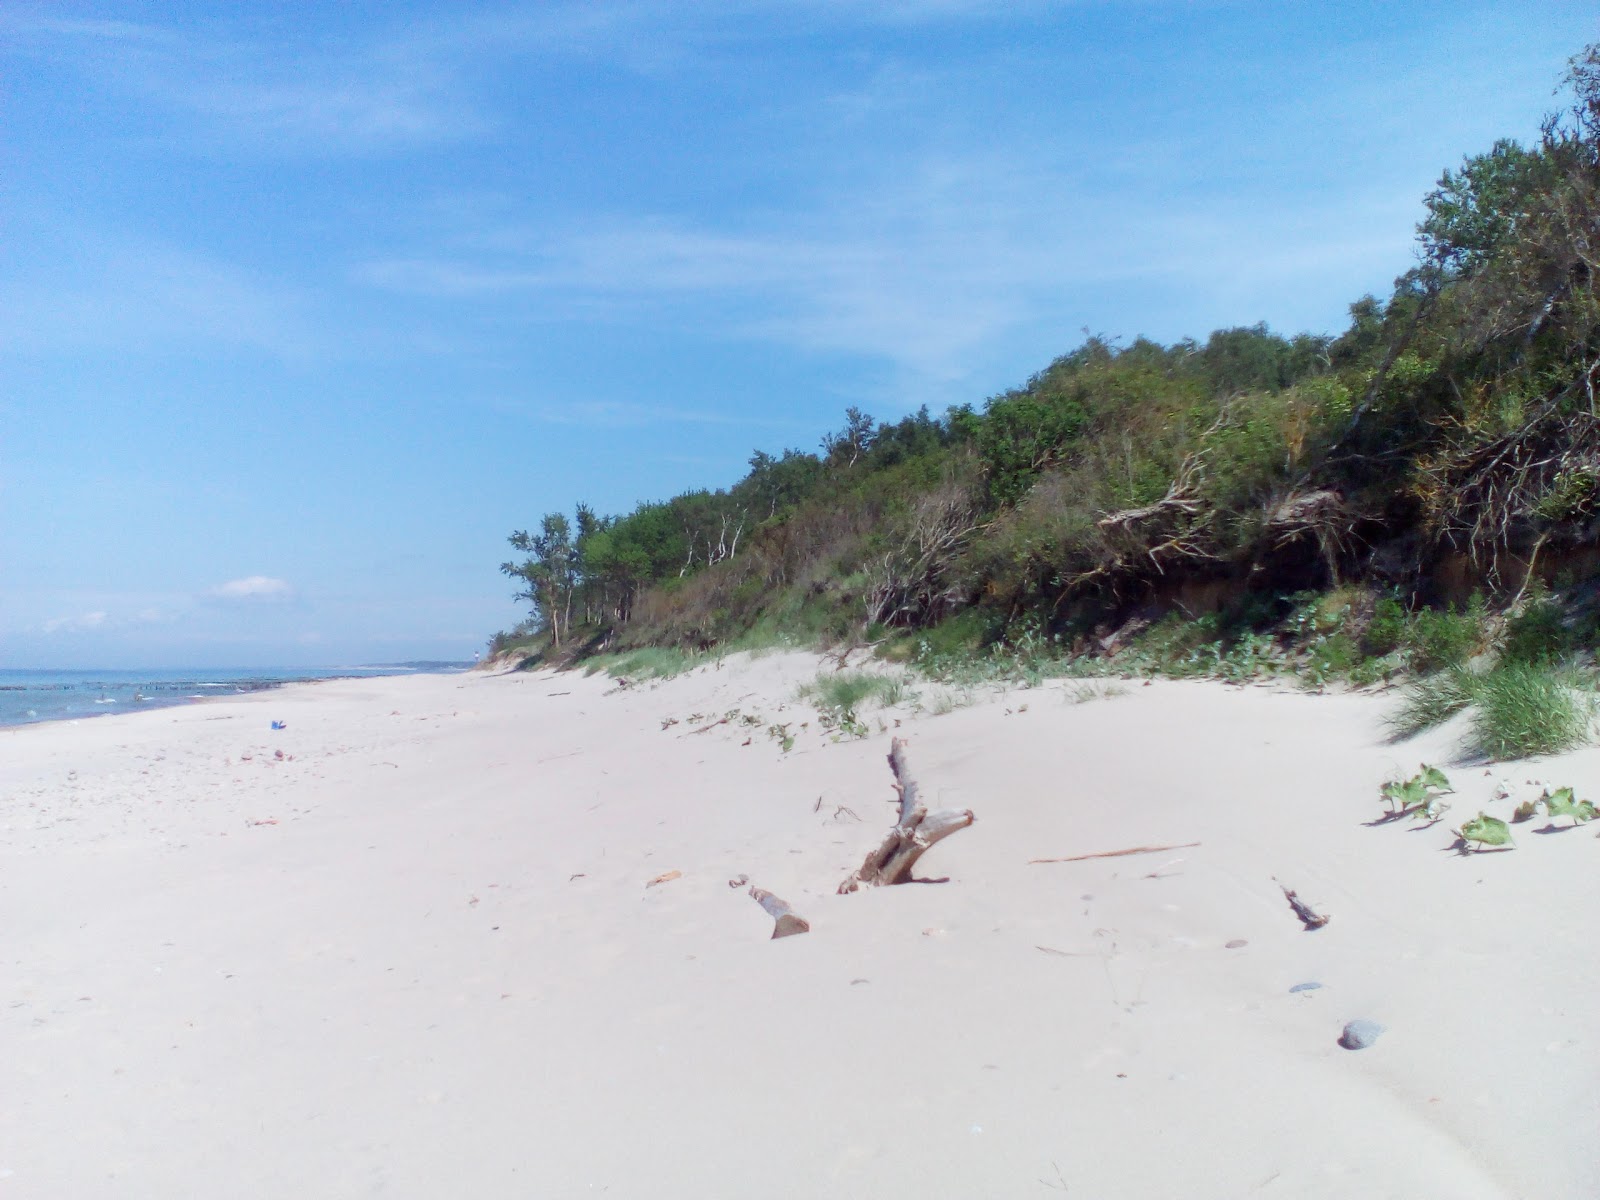 Valokuva Lestniza k moryuista. pinnalla kirkas hiekka:n kanssa